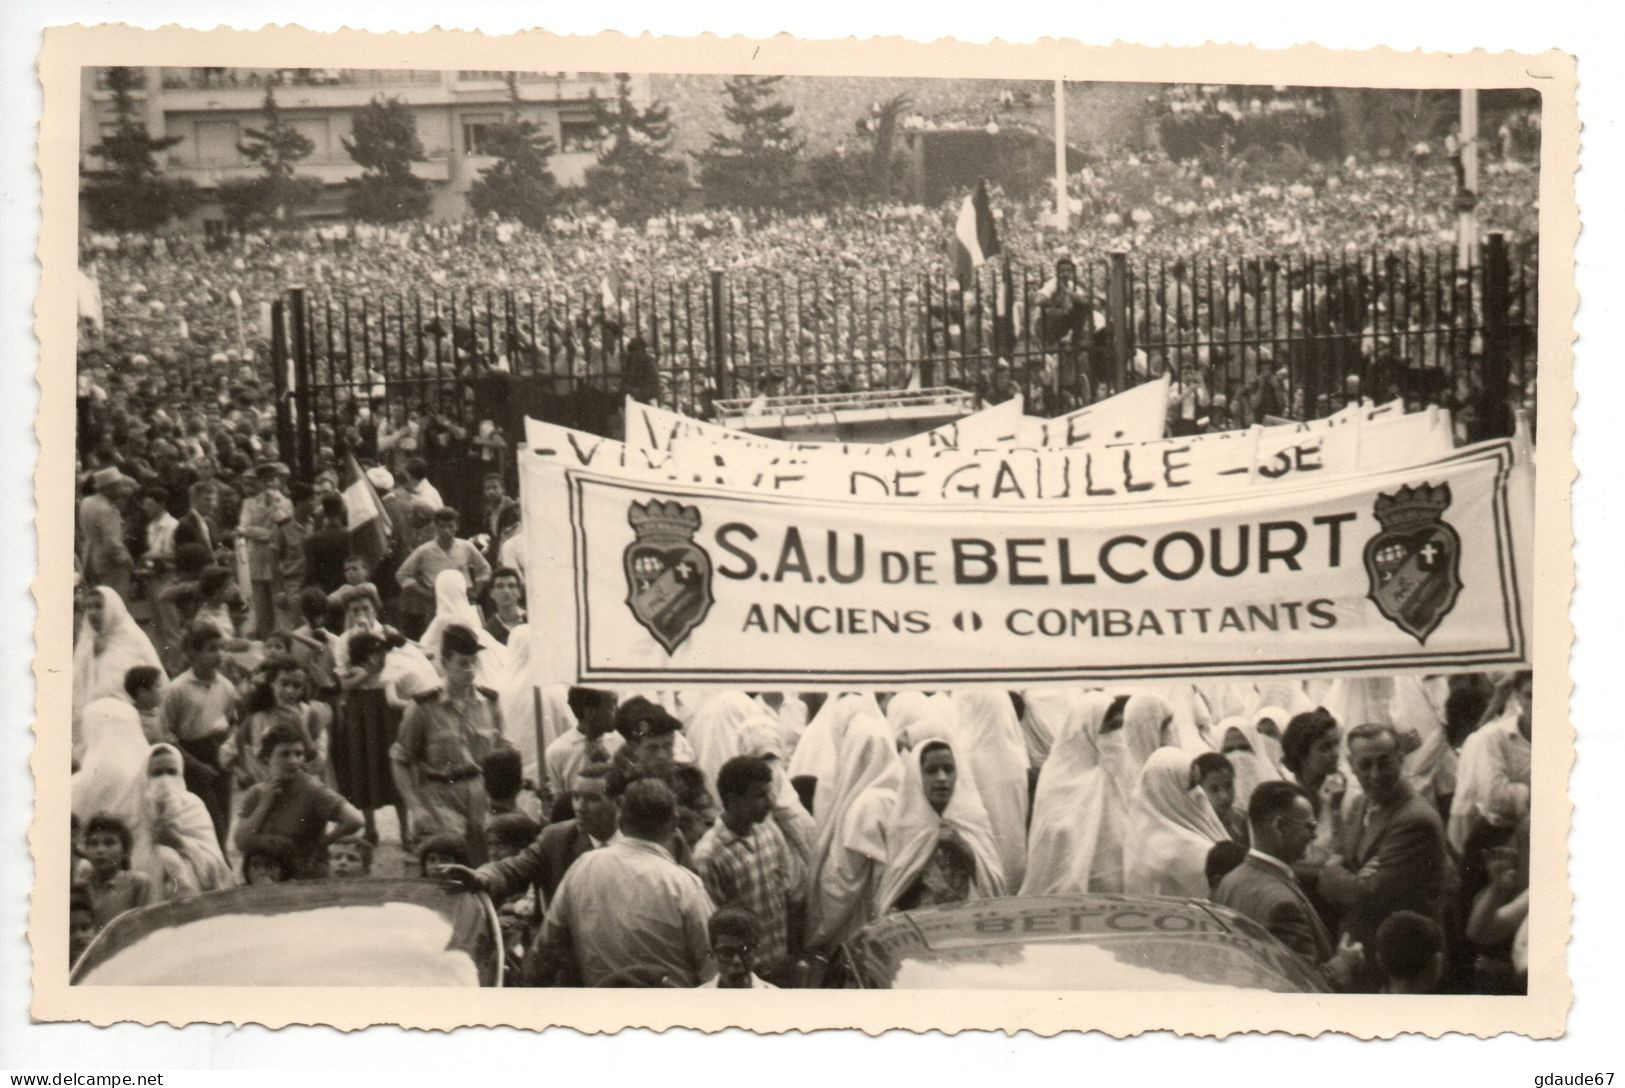 SUPERBE LOT De 5 PHOTOS Du FORUM D'ALGER (ALGERIE) - MAI 1958 - BANDEROLES "VIVE DE GAULLE" / "S.A.U DE BELCOURT" - Algeri